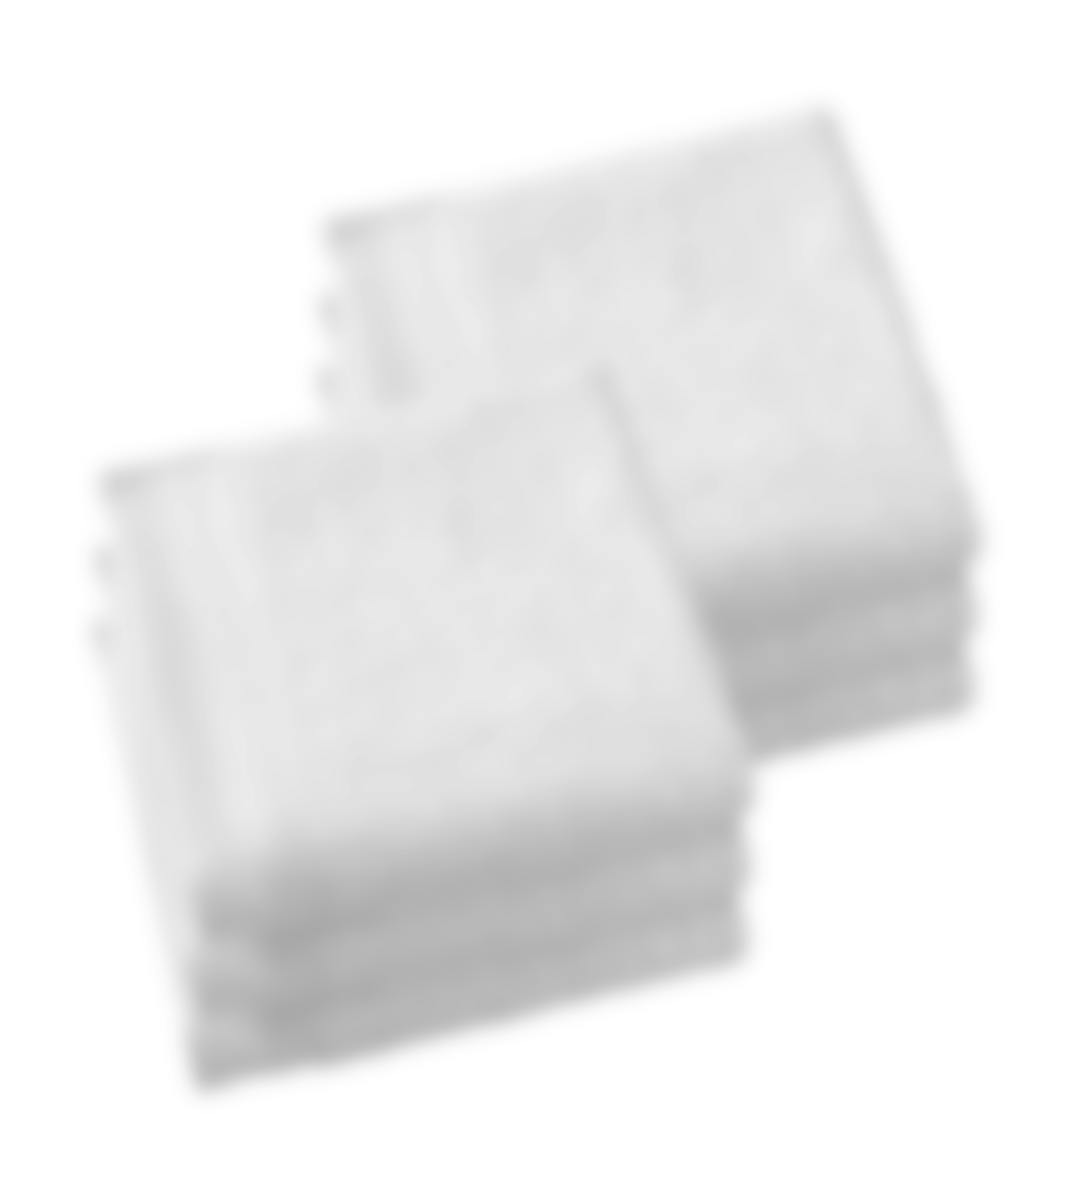 De Witte Lietaer serviette de bain Contessa white 50 x 100 cm set de 6